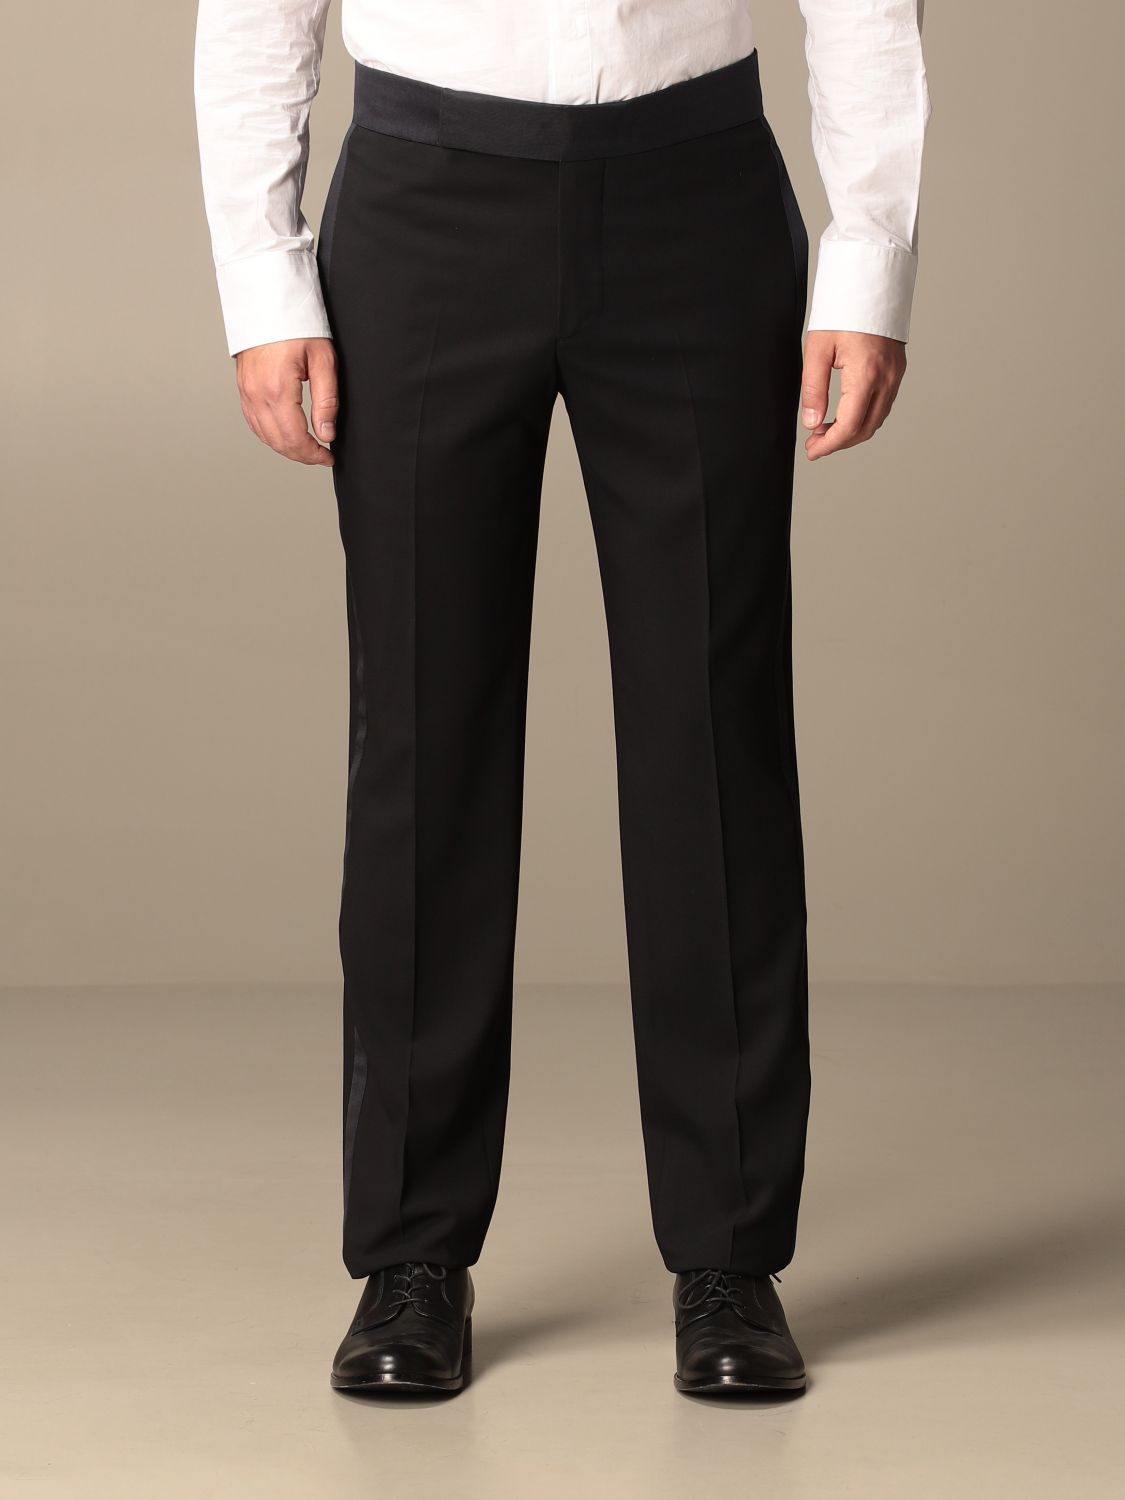 GIORGIO ARMANI: Suit men | Suit Giorgio Armani Men Black | Suit Giorgio ...